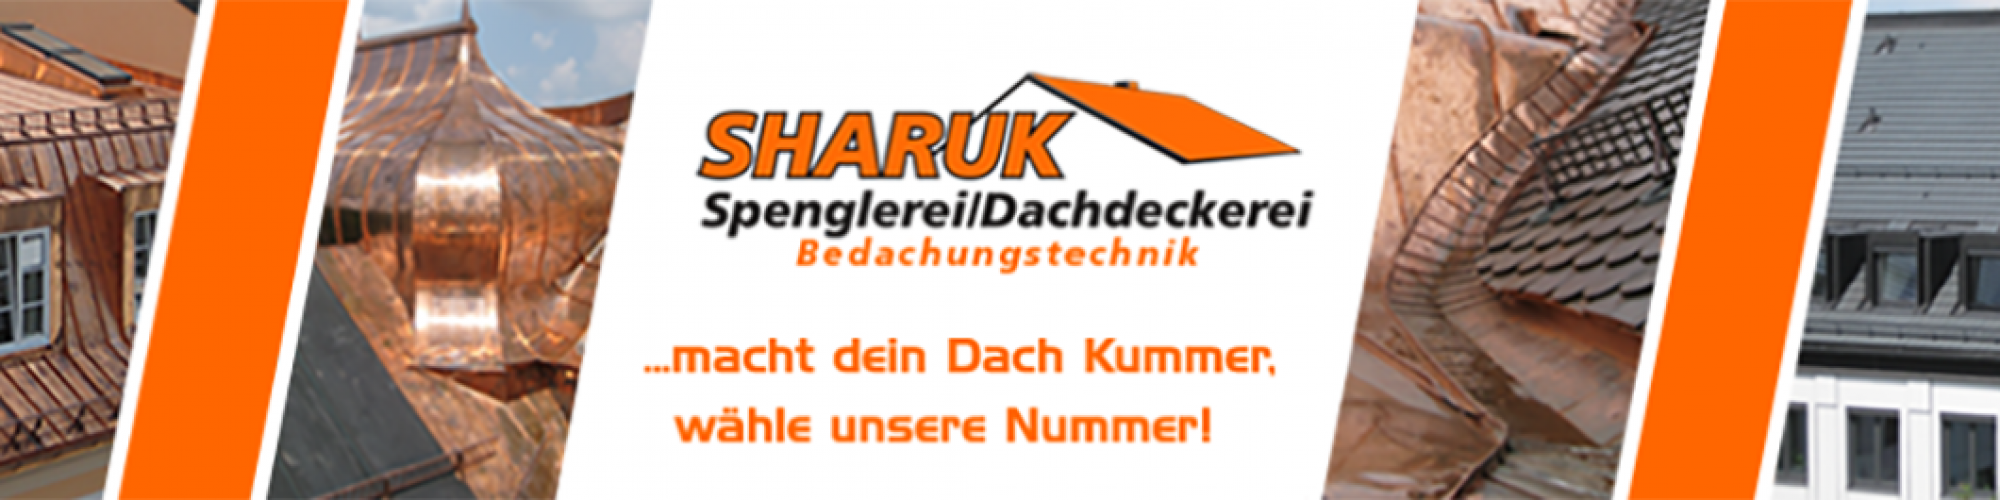 Spenglerei / Dachdeckerei Sharuk GmbH